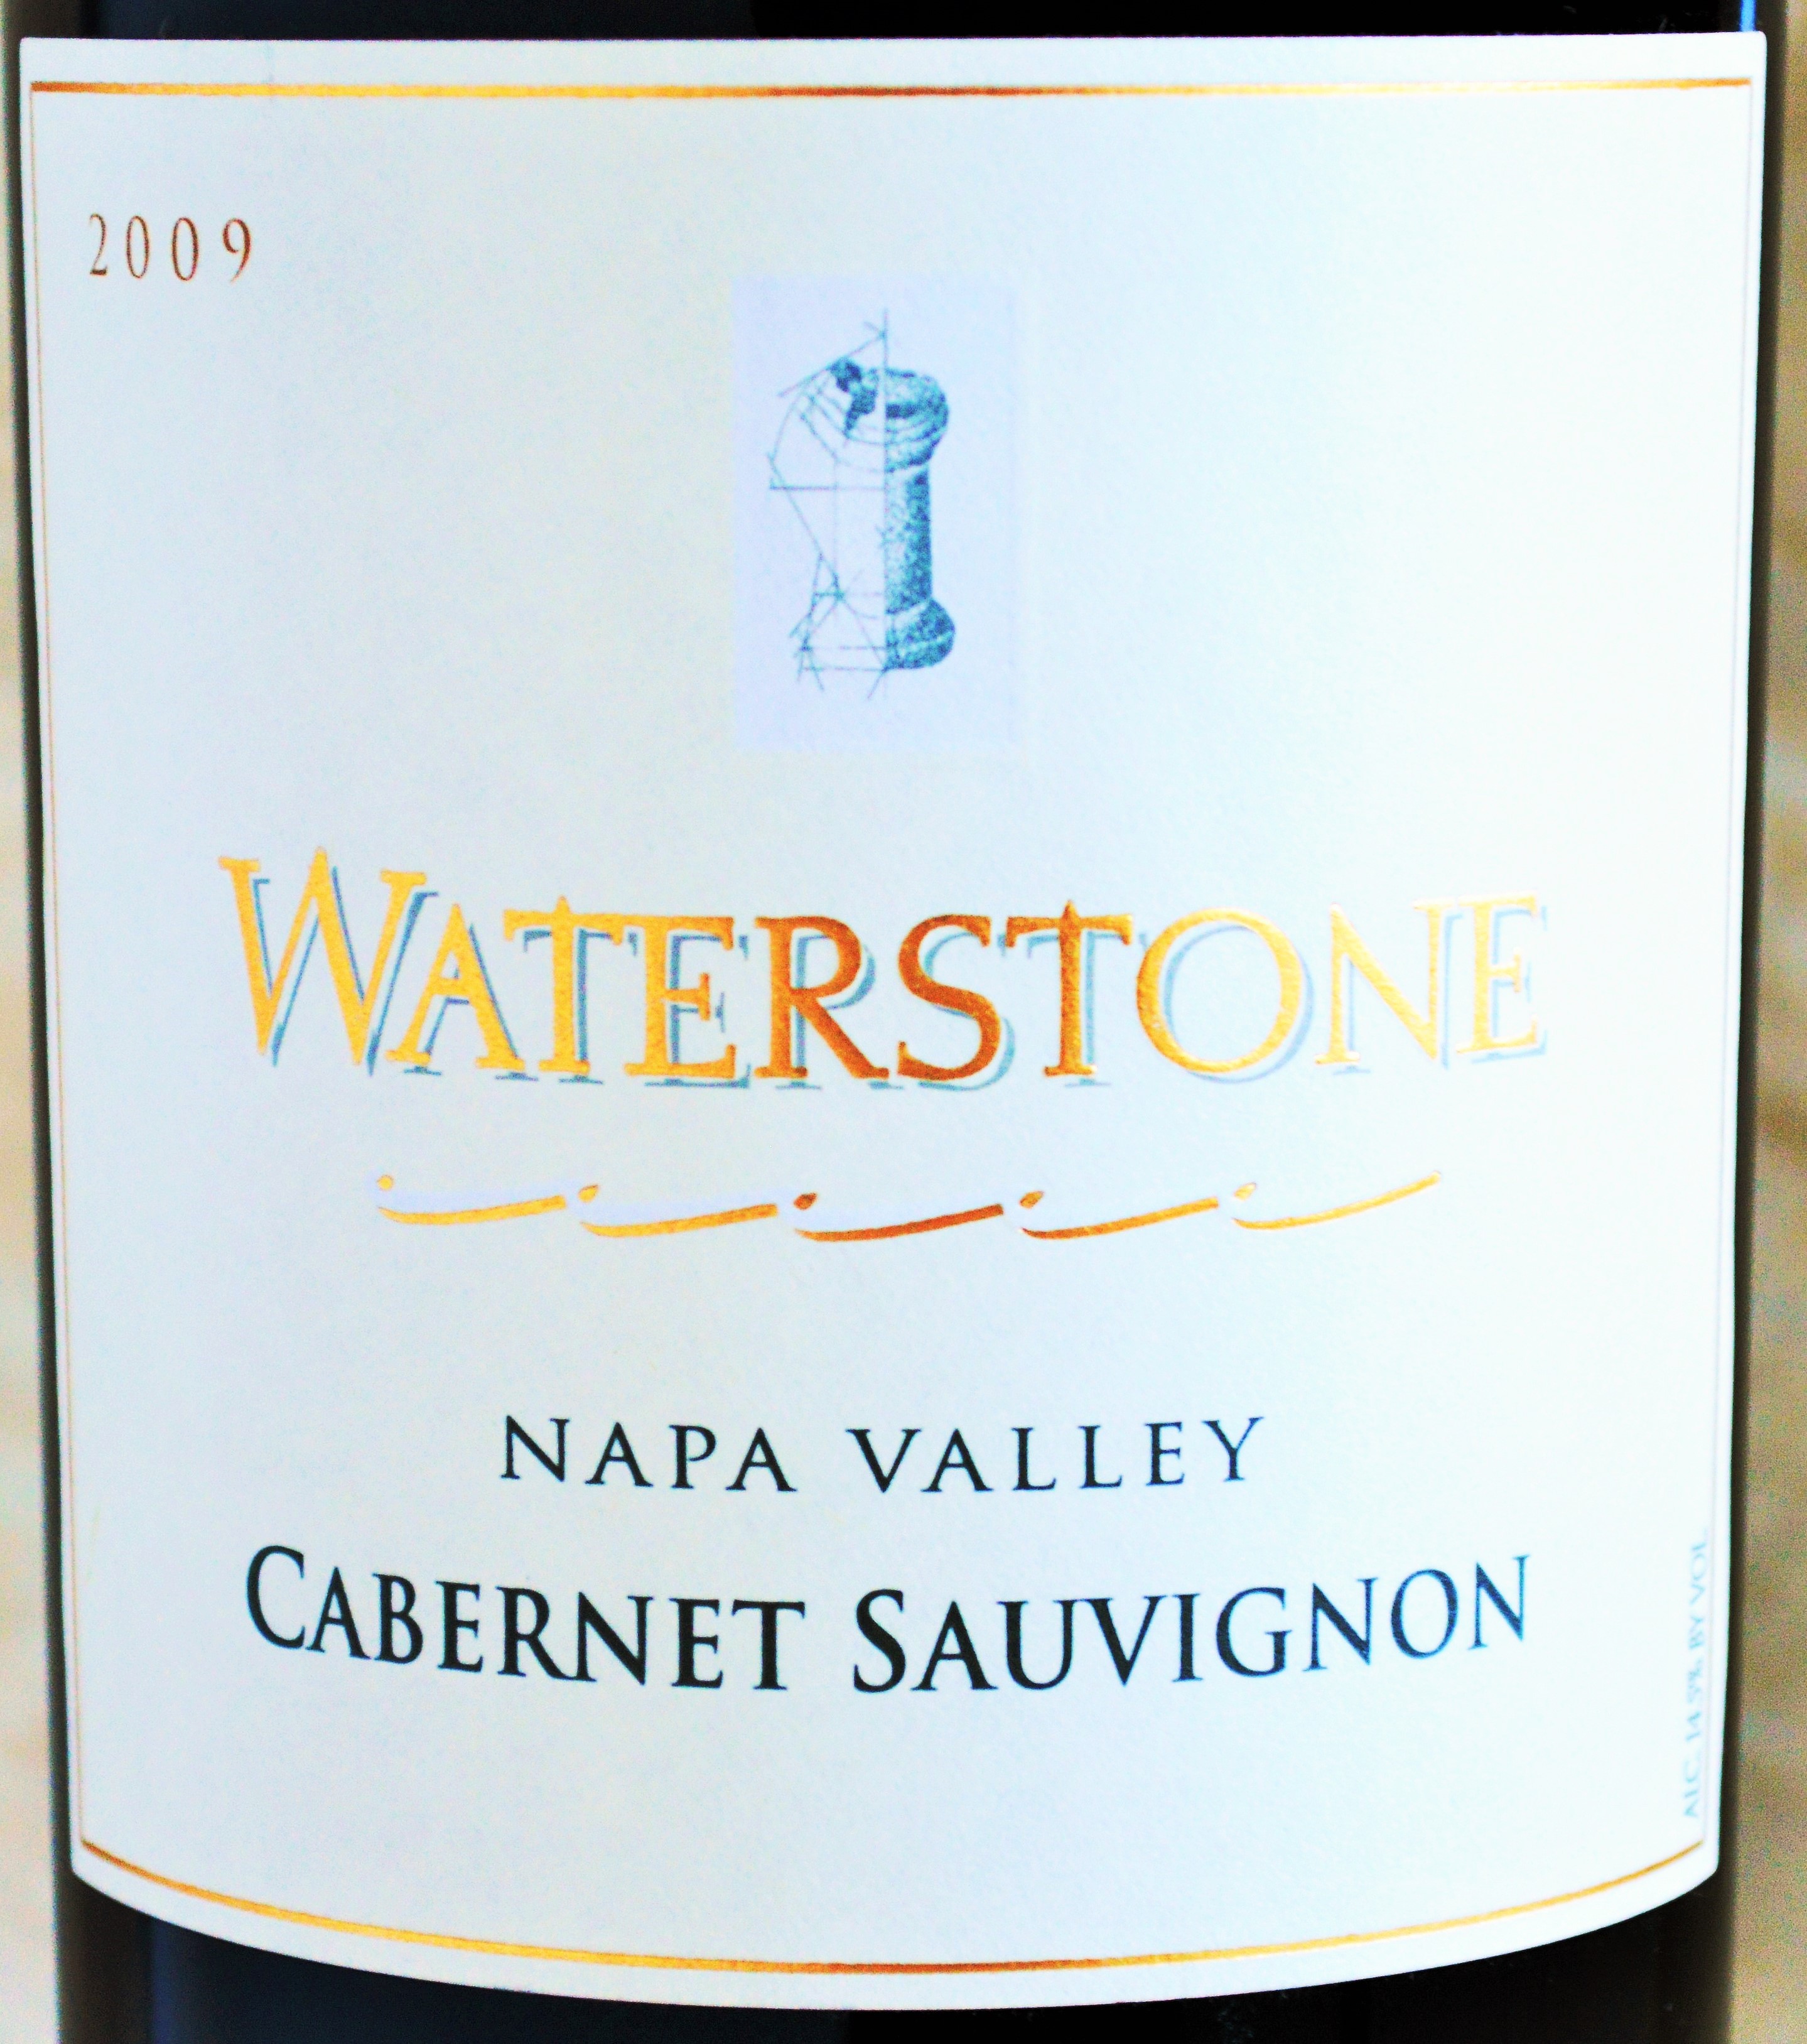 Waterstone Napa Valley Cabernet Sauvignon 2009